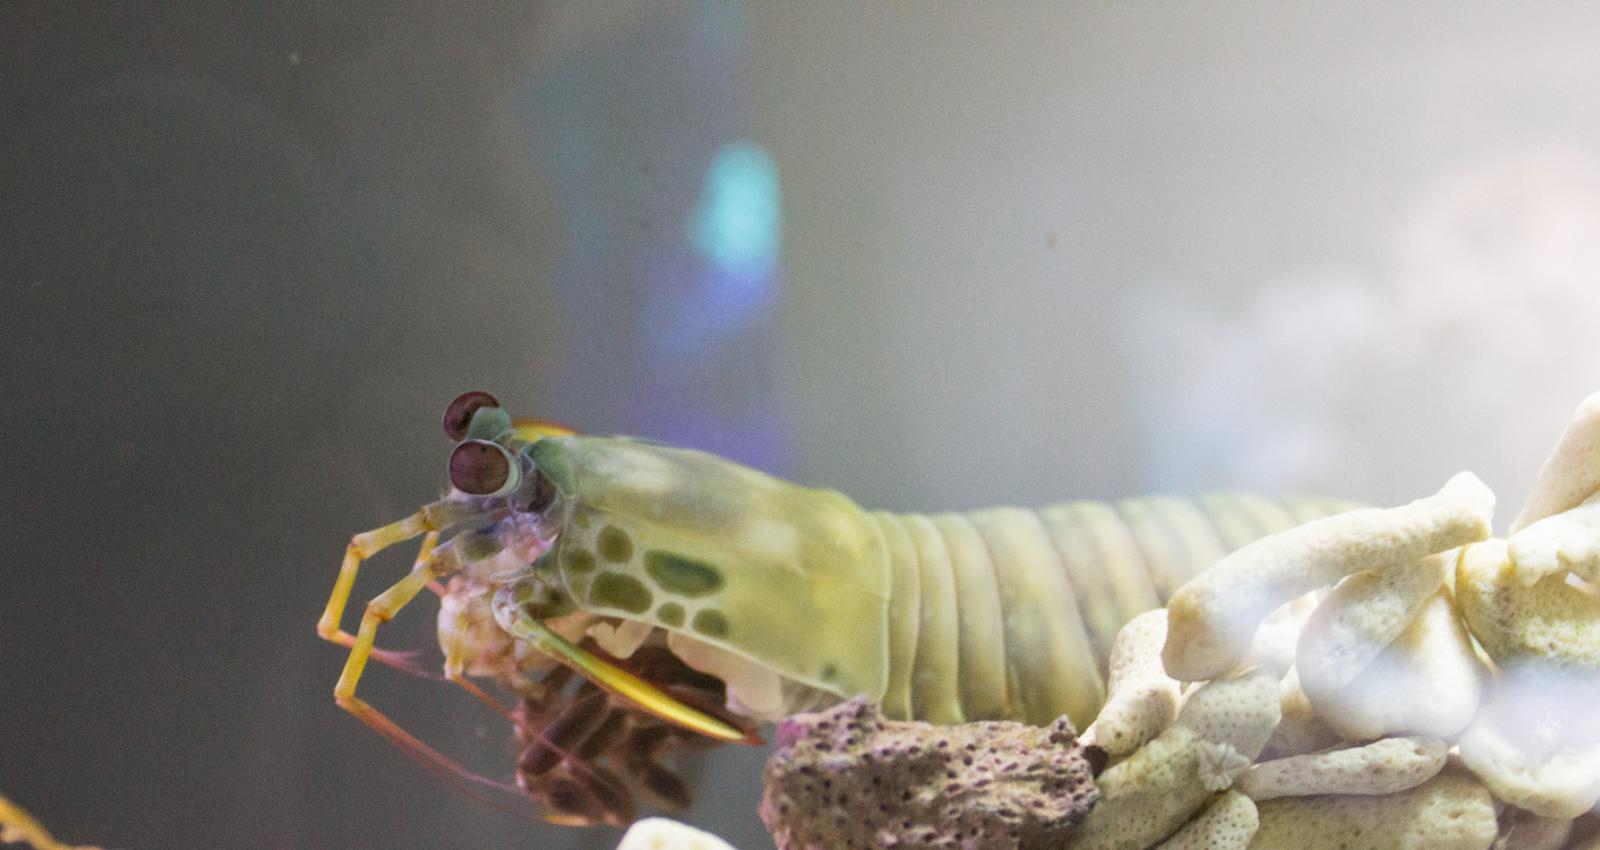 Mantis shrimp can live in aquariums